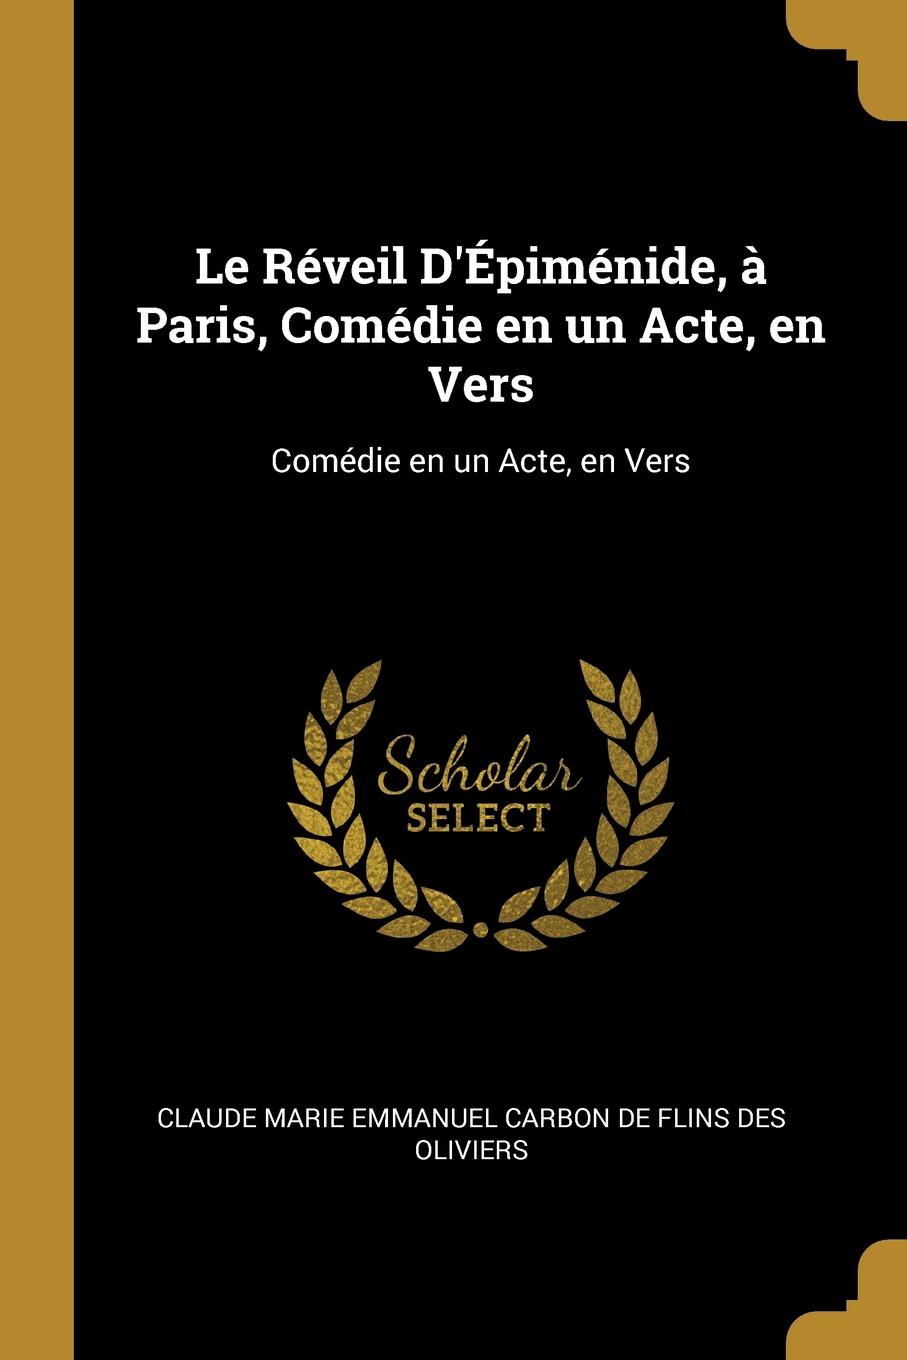 Le Reveil D.Epimenide, a Paris, Comedie en un Acte, en Vers. Comedie en un Acte, en Vers